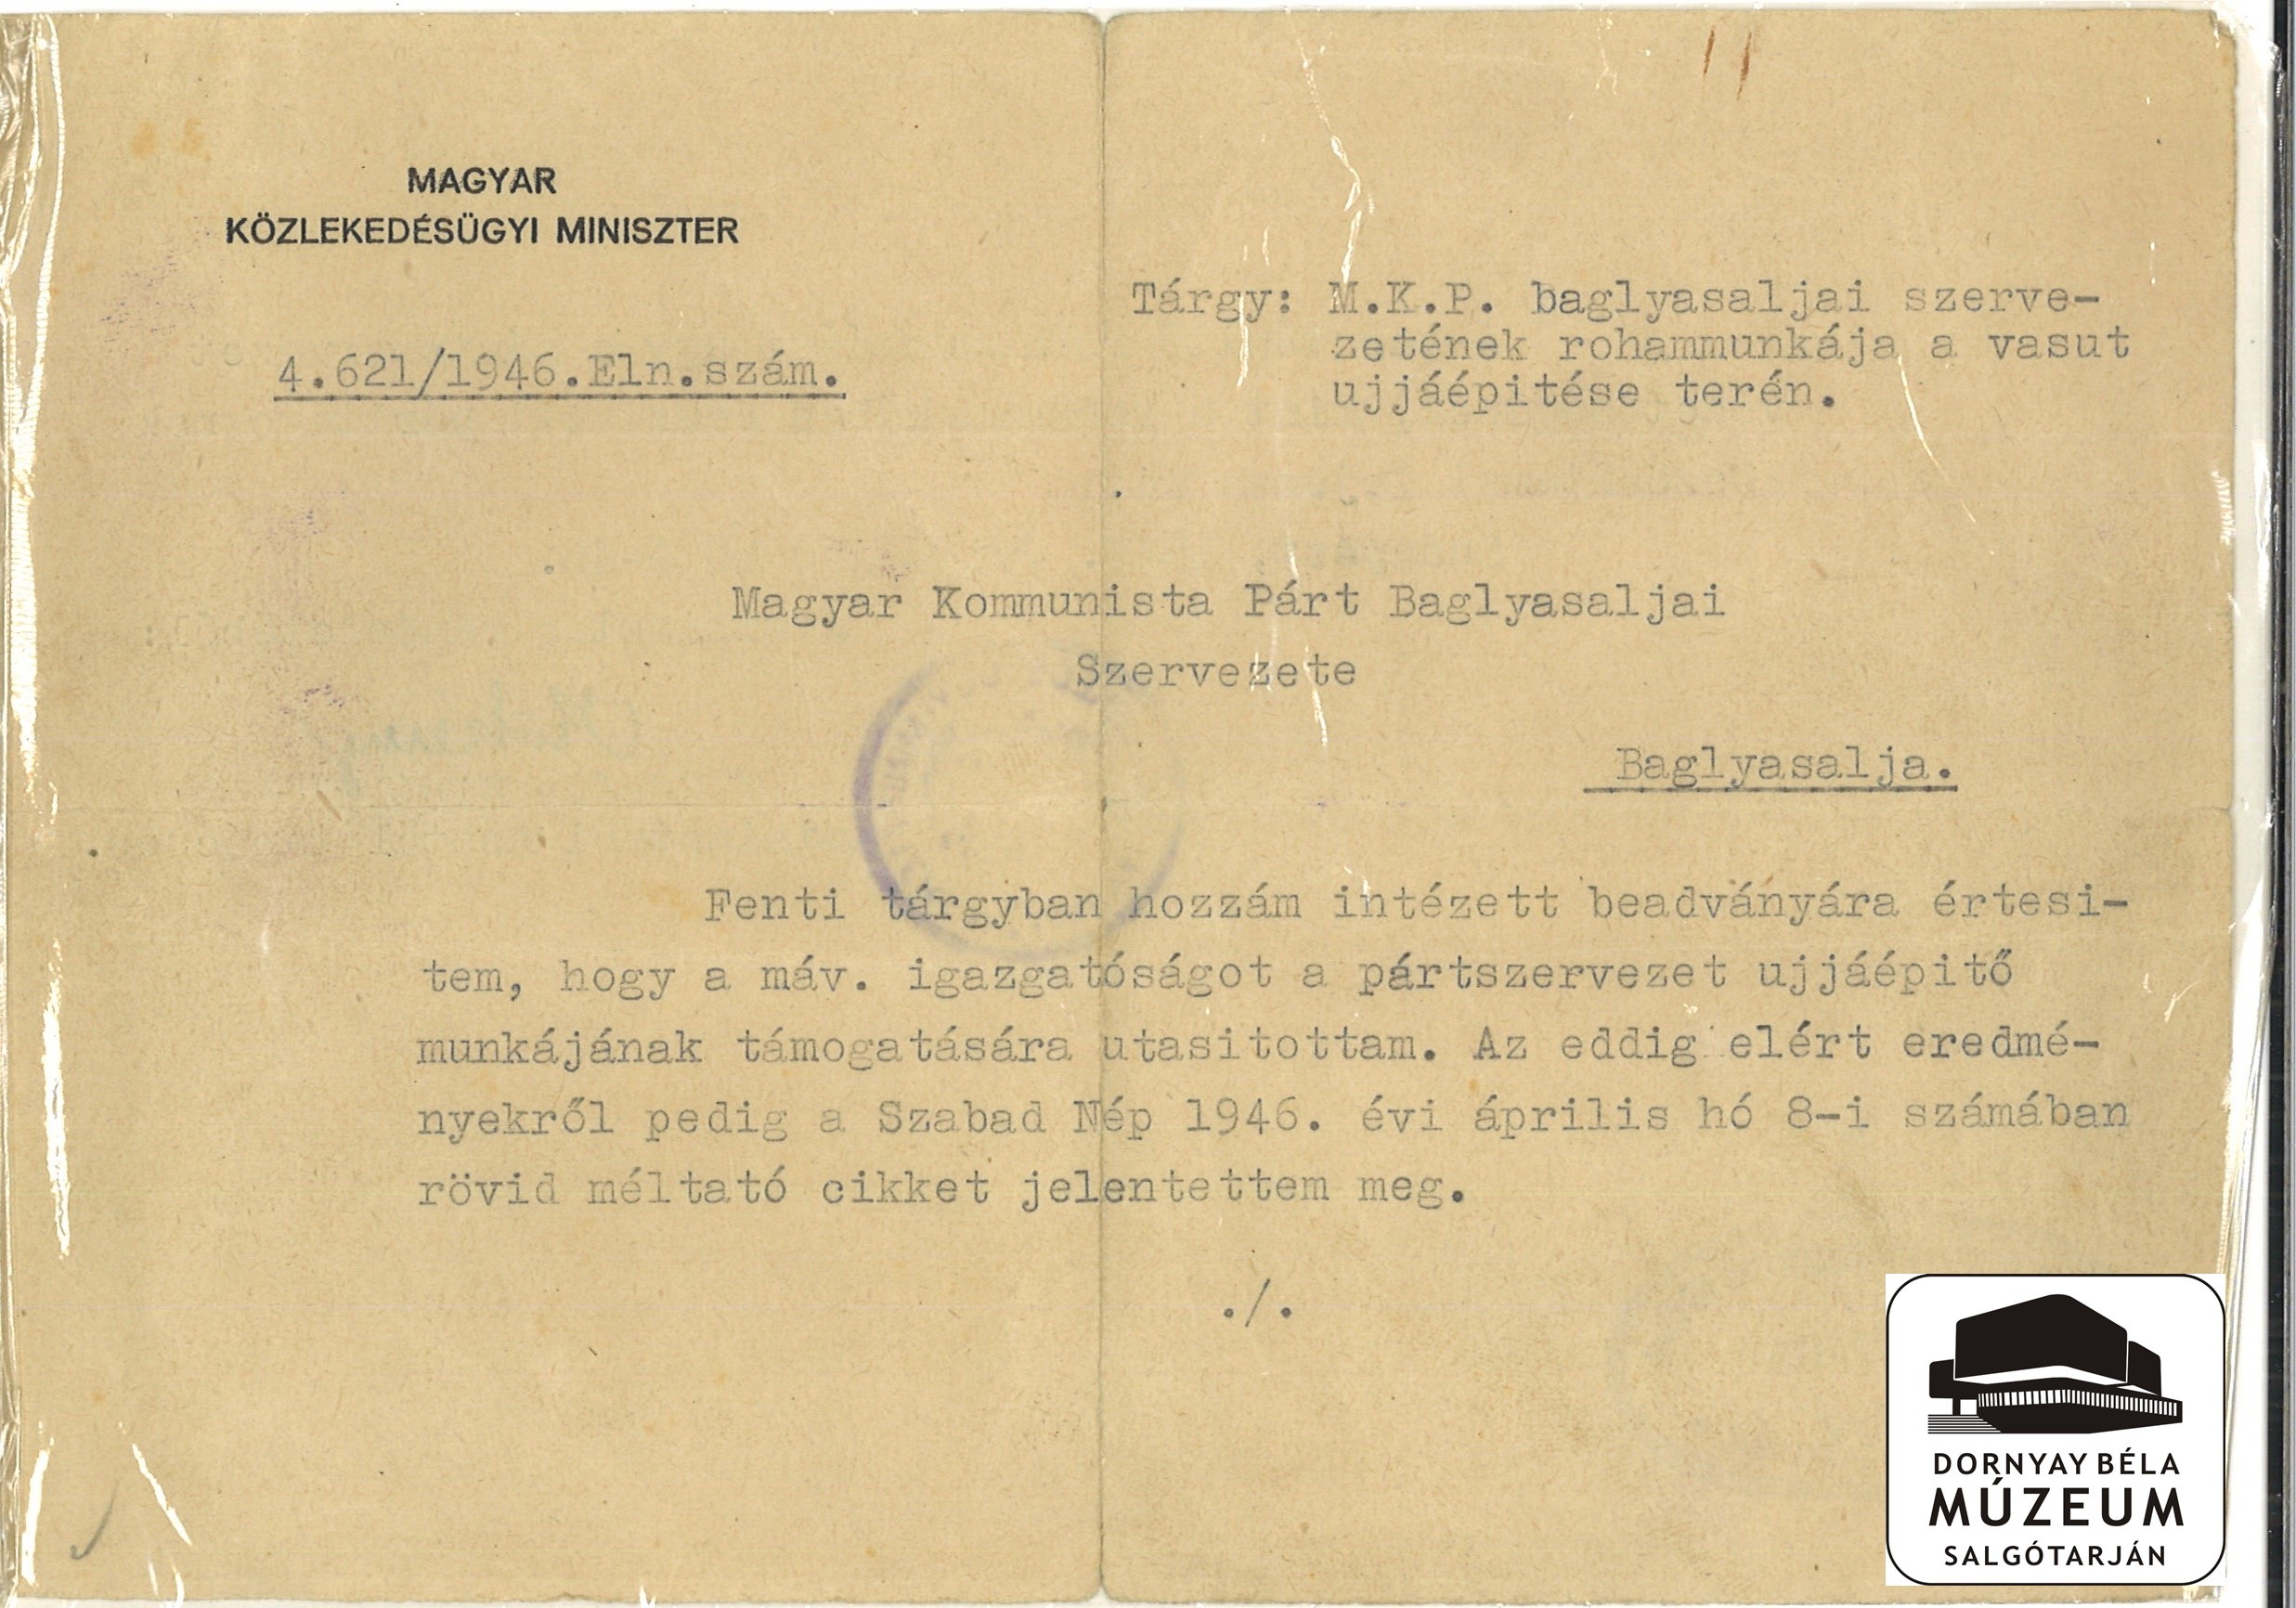 A Közlekedésügyi Minisztérium levele az M.K.P. baglyasaljai szervezetének, melyben a vasútépítő munkáért köszönetet mondanak (Dornyay Béla Múzeum, Salgótarján CC BY-NC-SA)